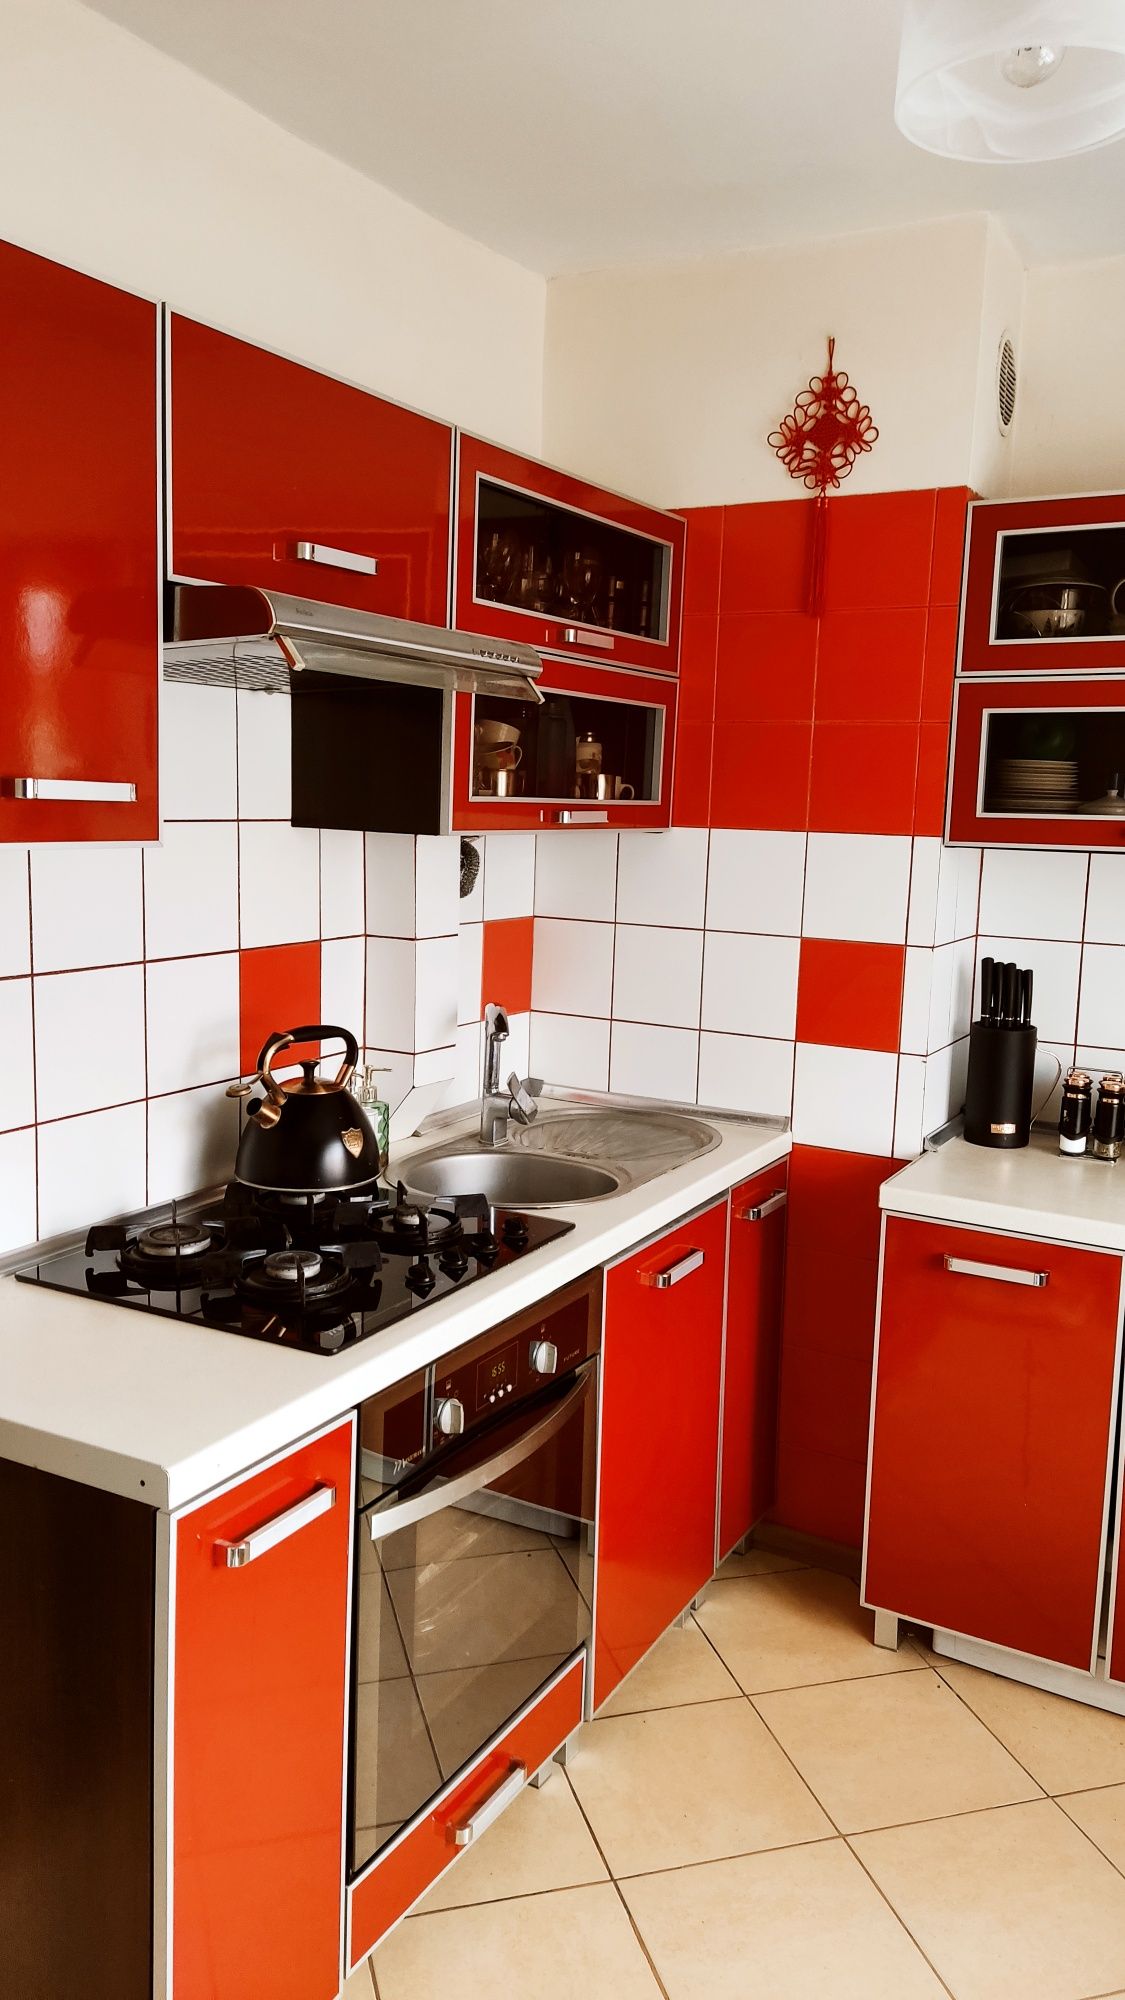 Kuchnia meble do kuchni  kolor czerwony